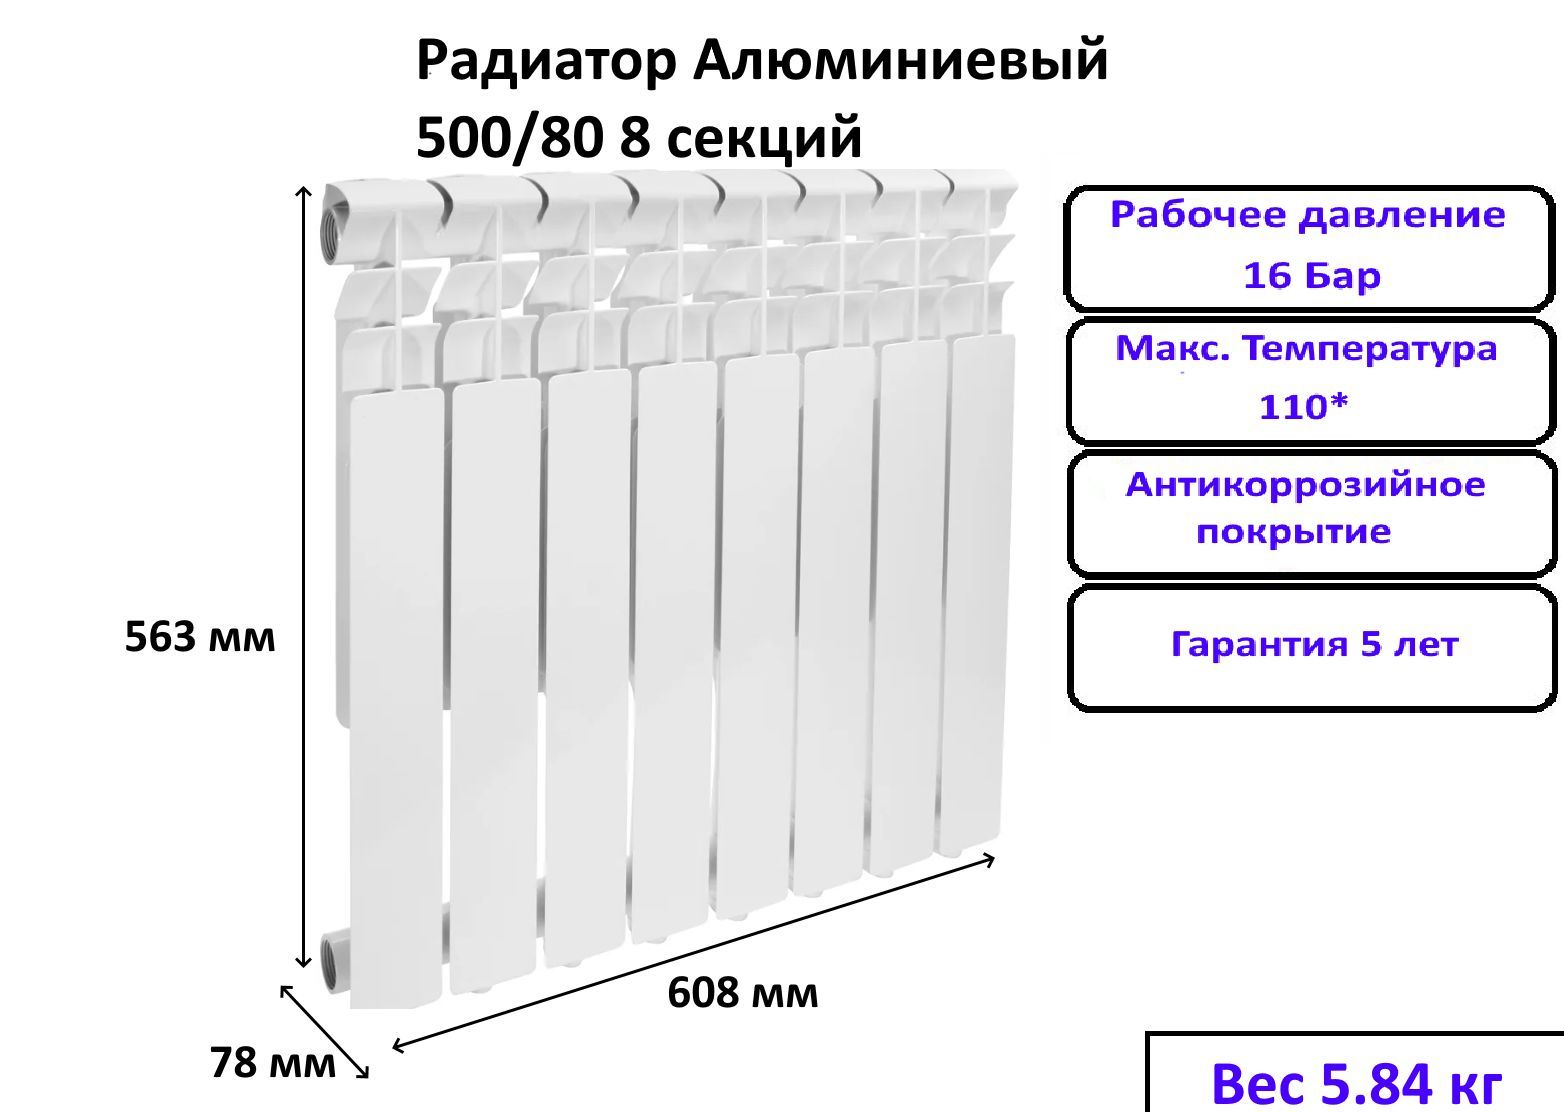 Секции алюминиевых радиаторов радиатор Solaris 500-80. Радиатор 500 80 мощность секции. Размер алюминиевого радиатора 8 секций. Теплоотдача РБС 500-80.